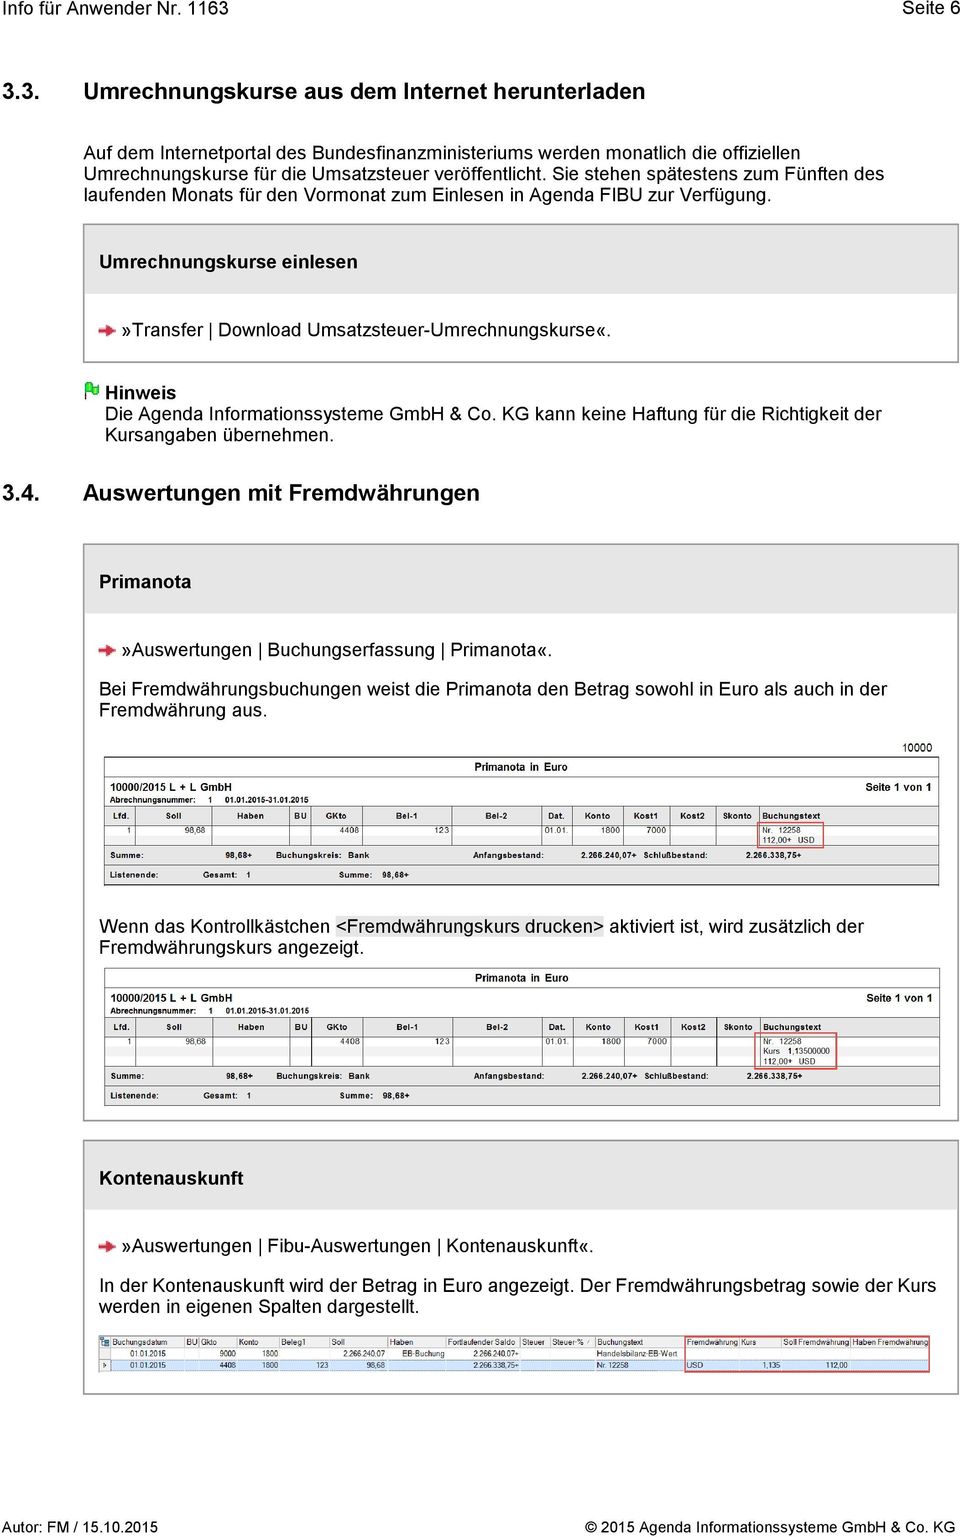 Die Agenda Informationssysteme GmbH & Co. KG kann keine Haftung für die Richtigkeit der Kursangaben übernehmen. 3.4.